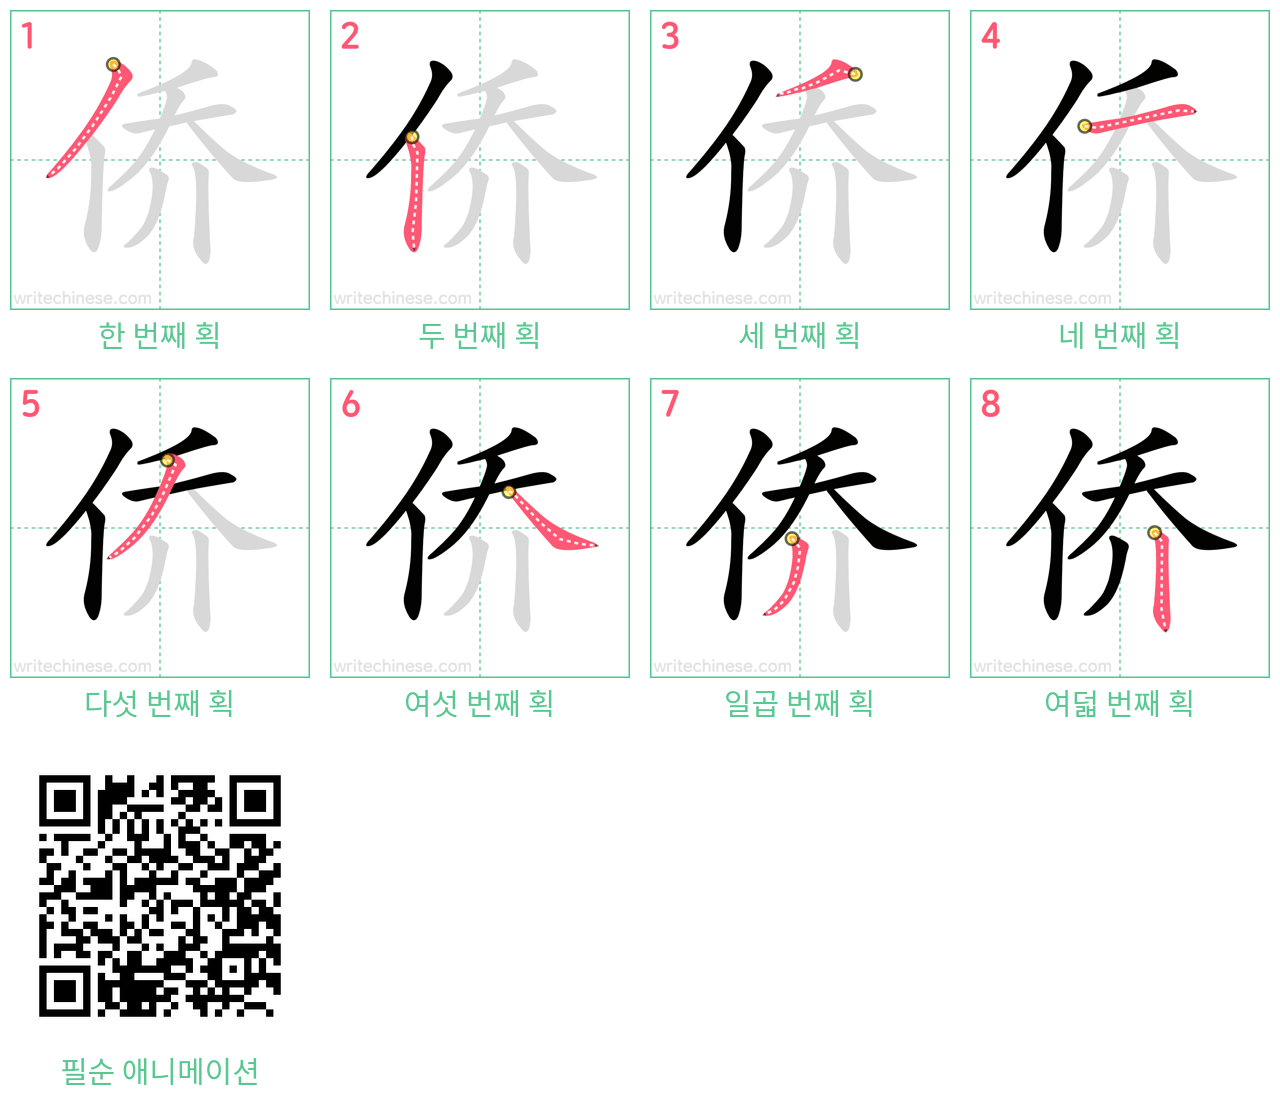 侨 step-by-step stroke order diagrams